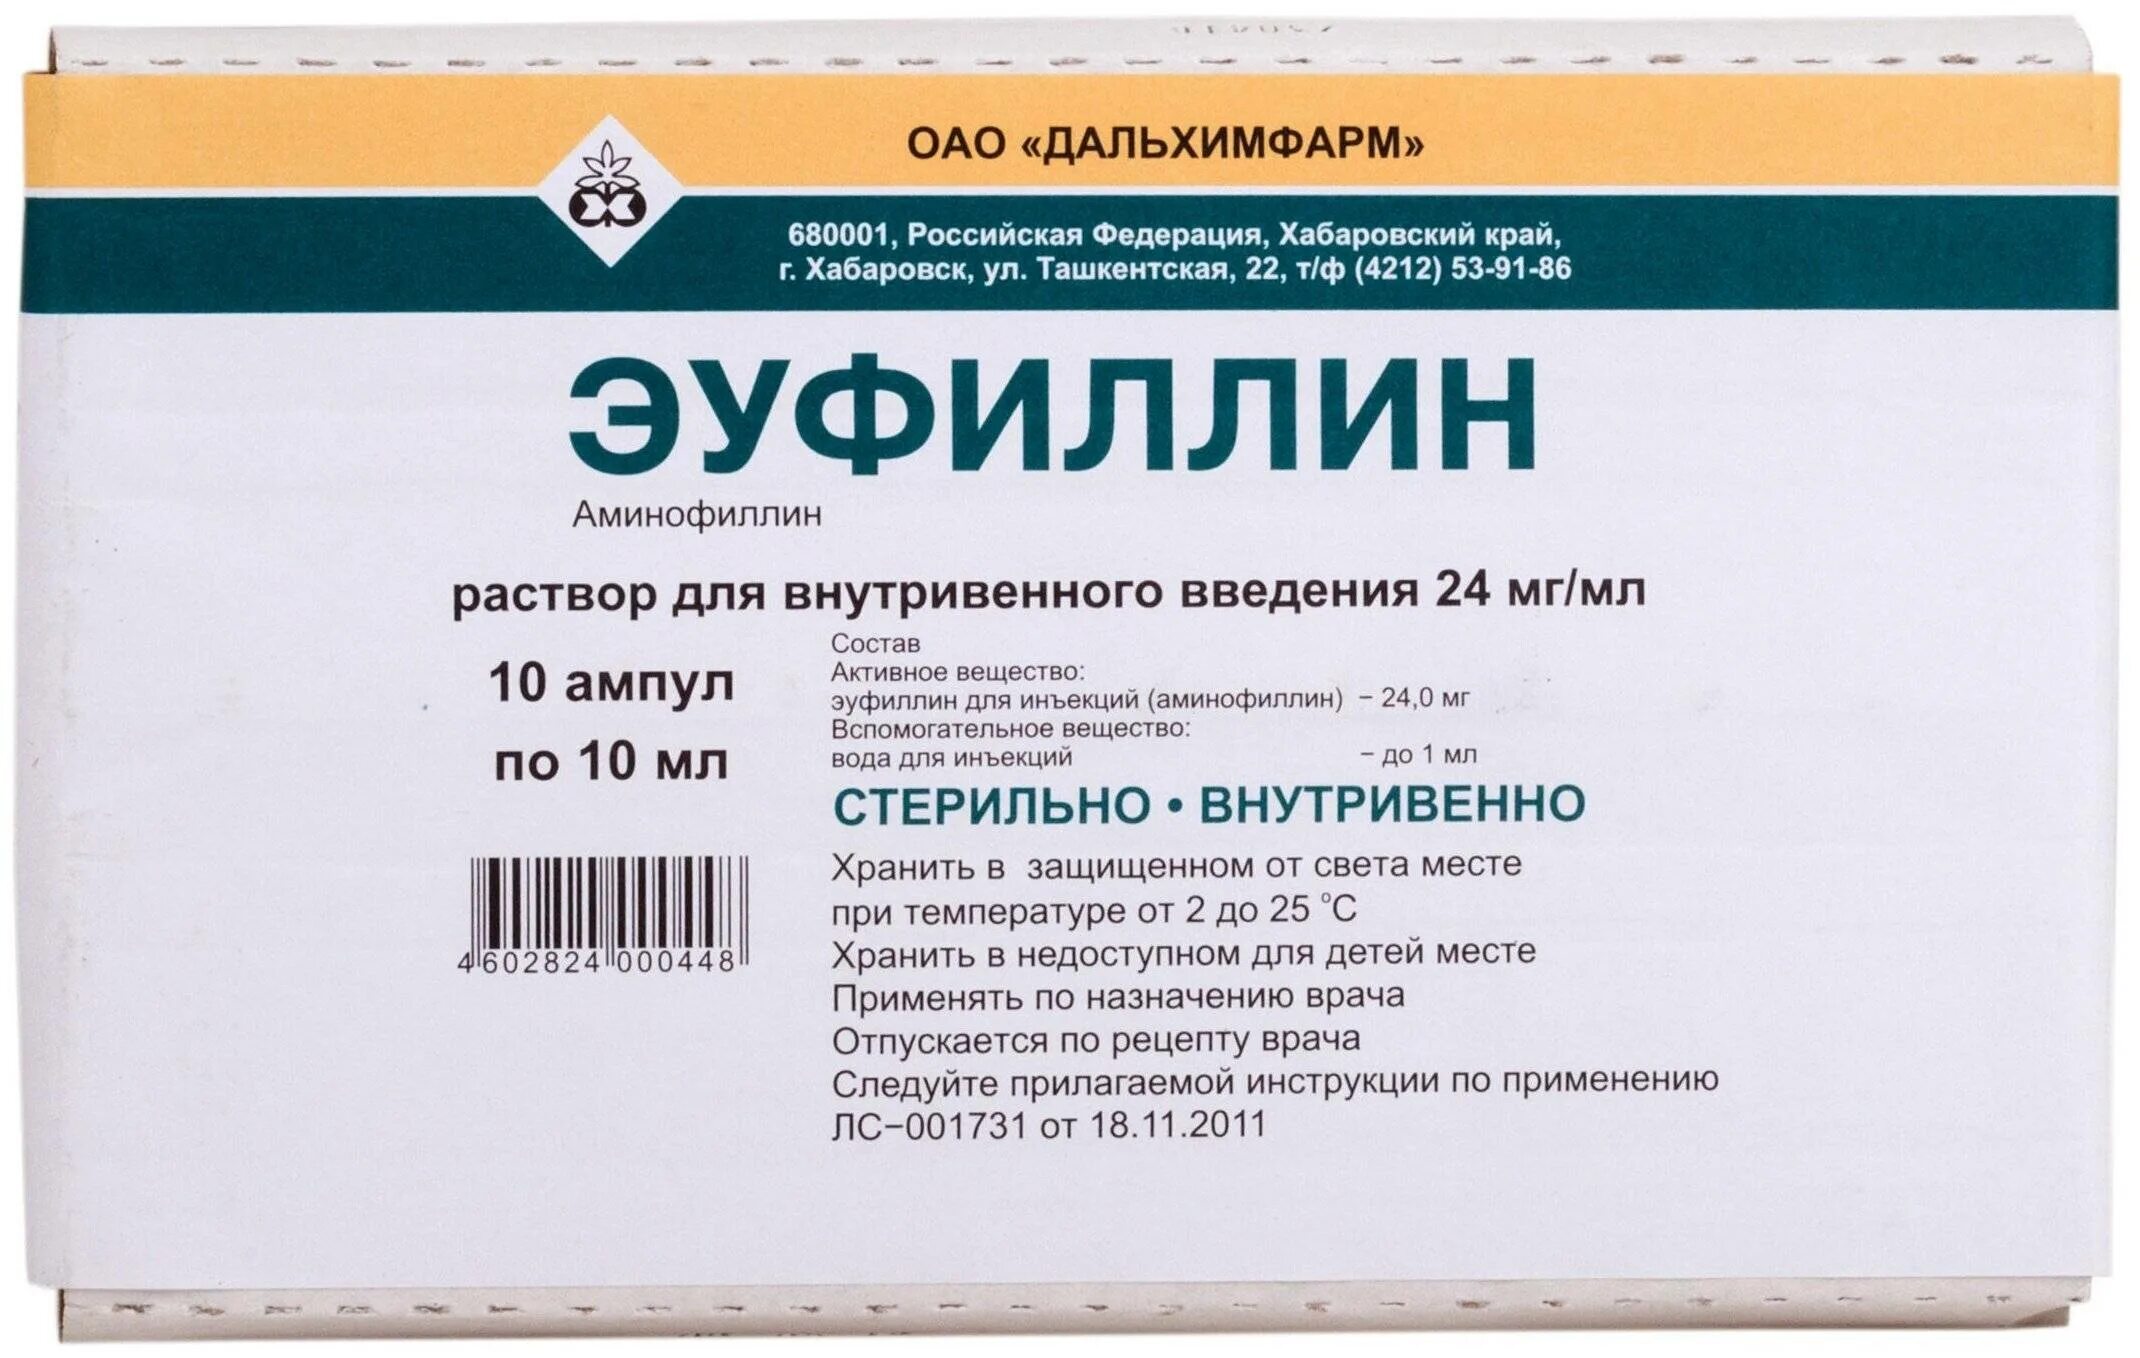 Эуфиллин раствор для инъекций отзывы. Эуфиллин 24 мг/мл. Аминофиллин раствор для внутривенного введения 24 мг/мл. Эуфиллин для внутривенного введения применяется.